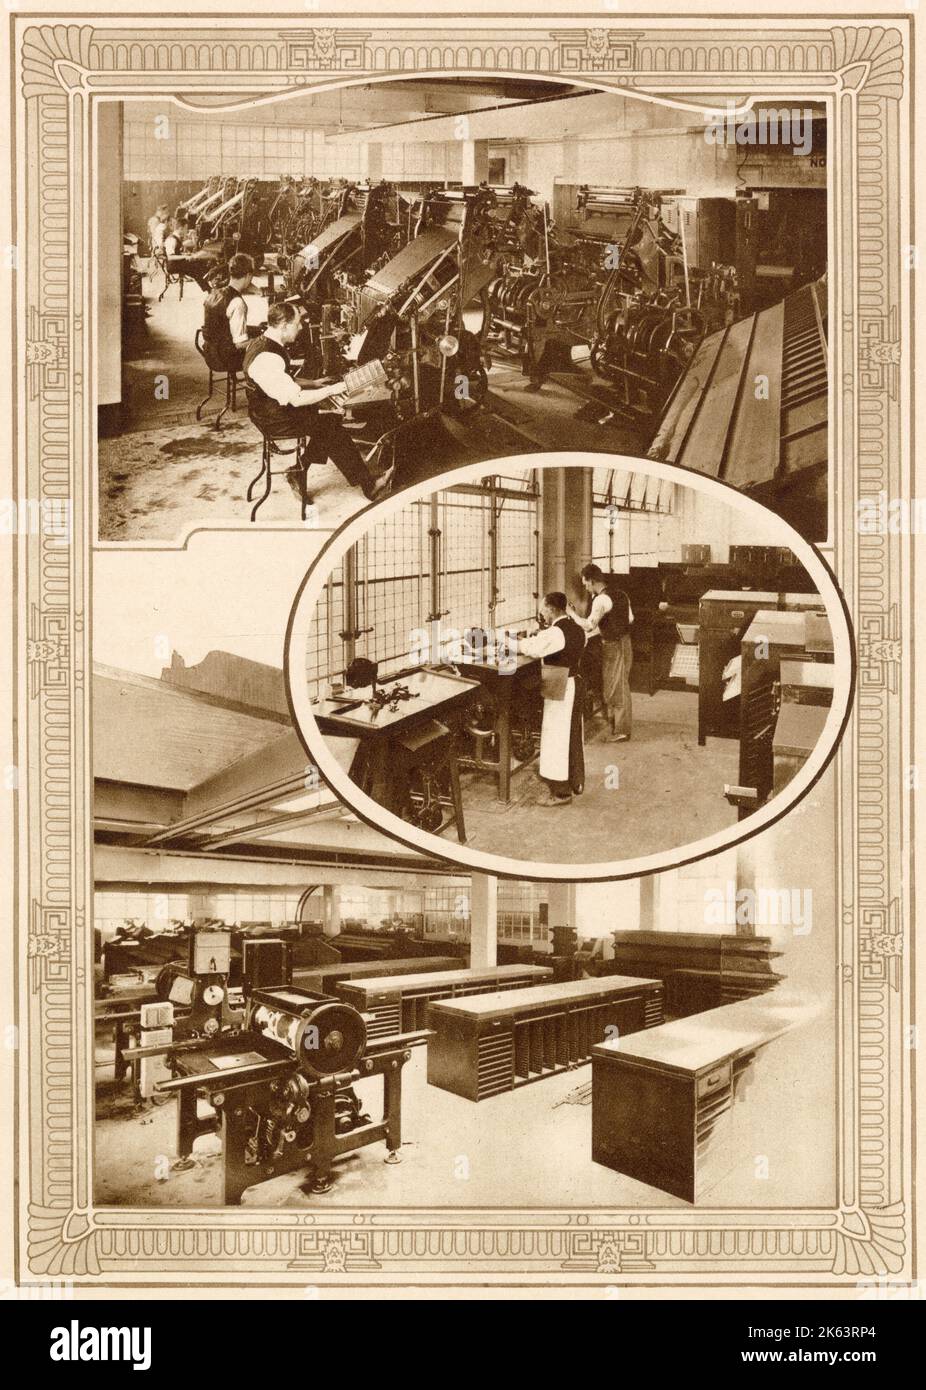 Quelques-unes des machines linotype modernes qui ont défini le type pour le Daily Mail à Northcliffe House à Kensington Londres. (Centre) Ludlow Casters par lesquels le type d'affichage pour les rubriques et les publicités est traité rapidement. (Ci-dessous) une autre section de la salle de composition avec des machines utilisées pour les matrices au premier plan. Banque D'Images